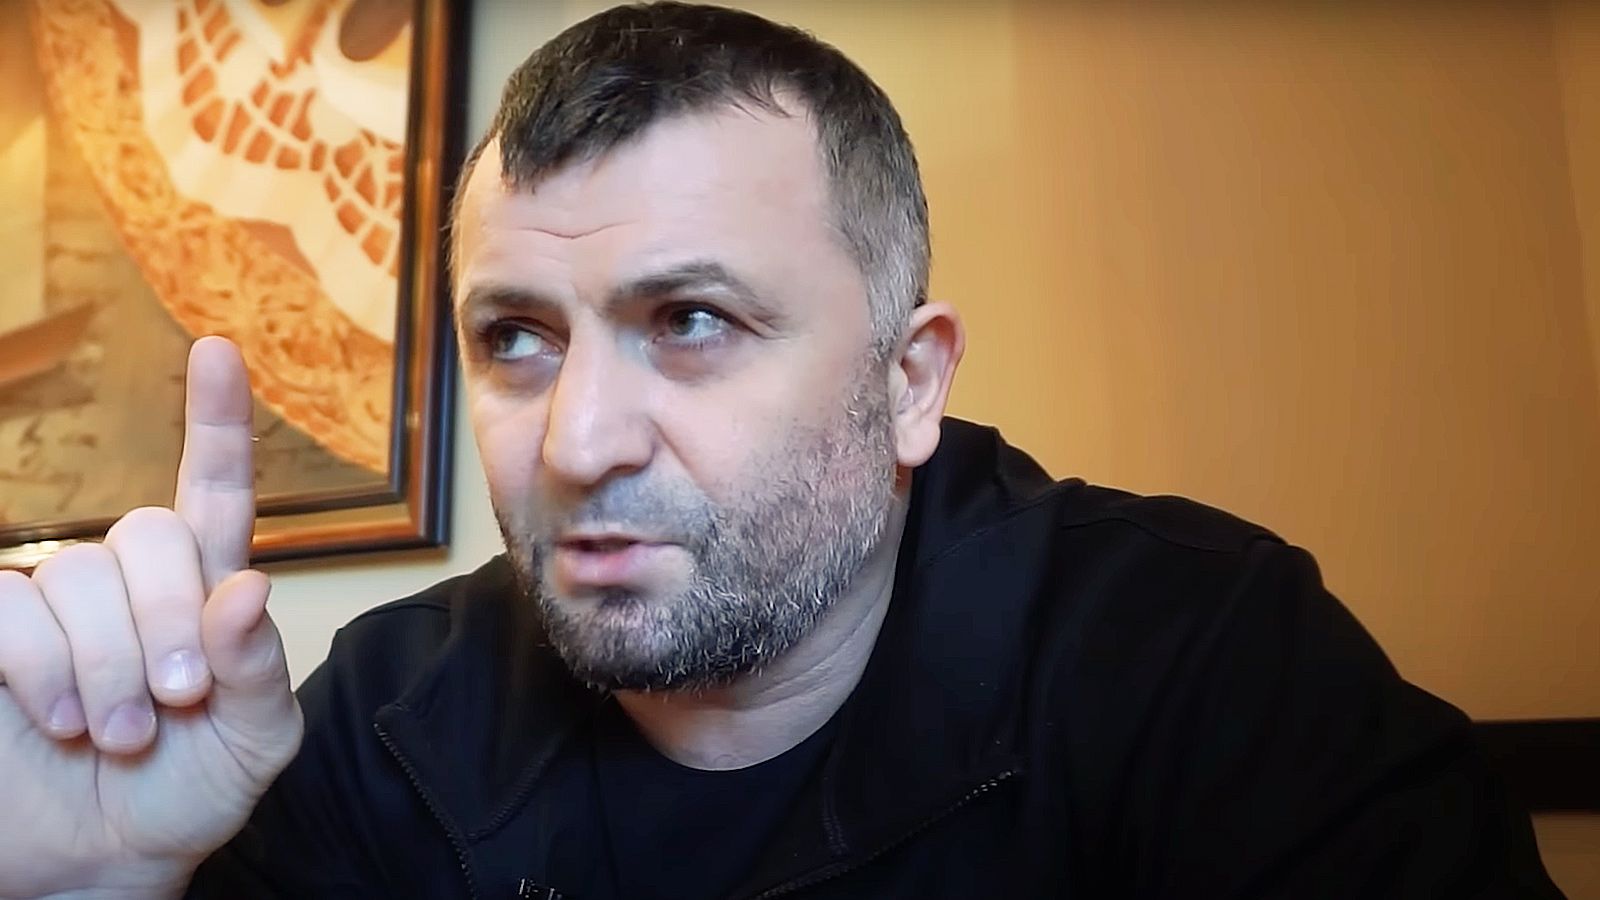 Рамазан Исмаилов, тренер ММА